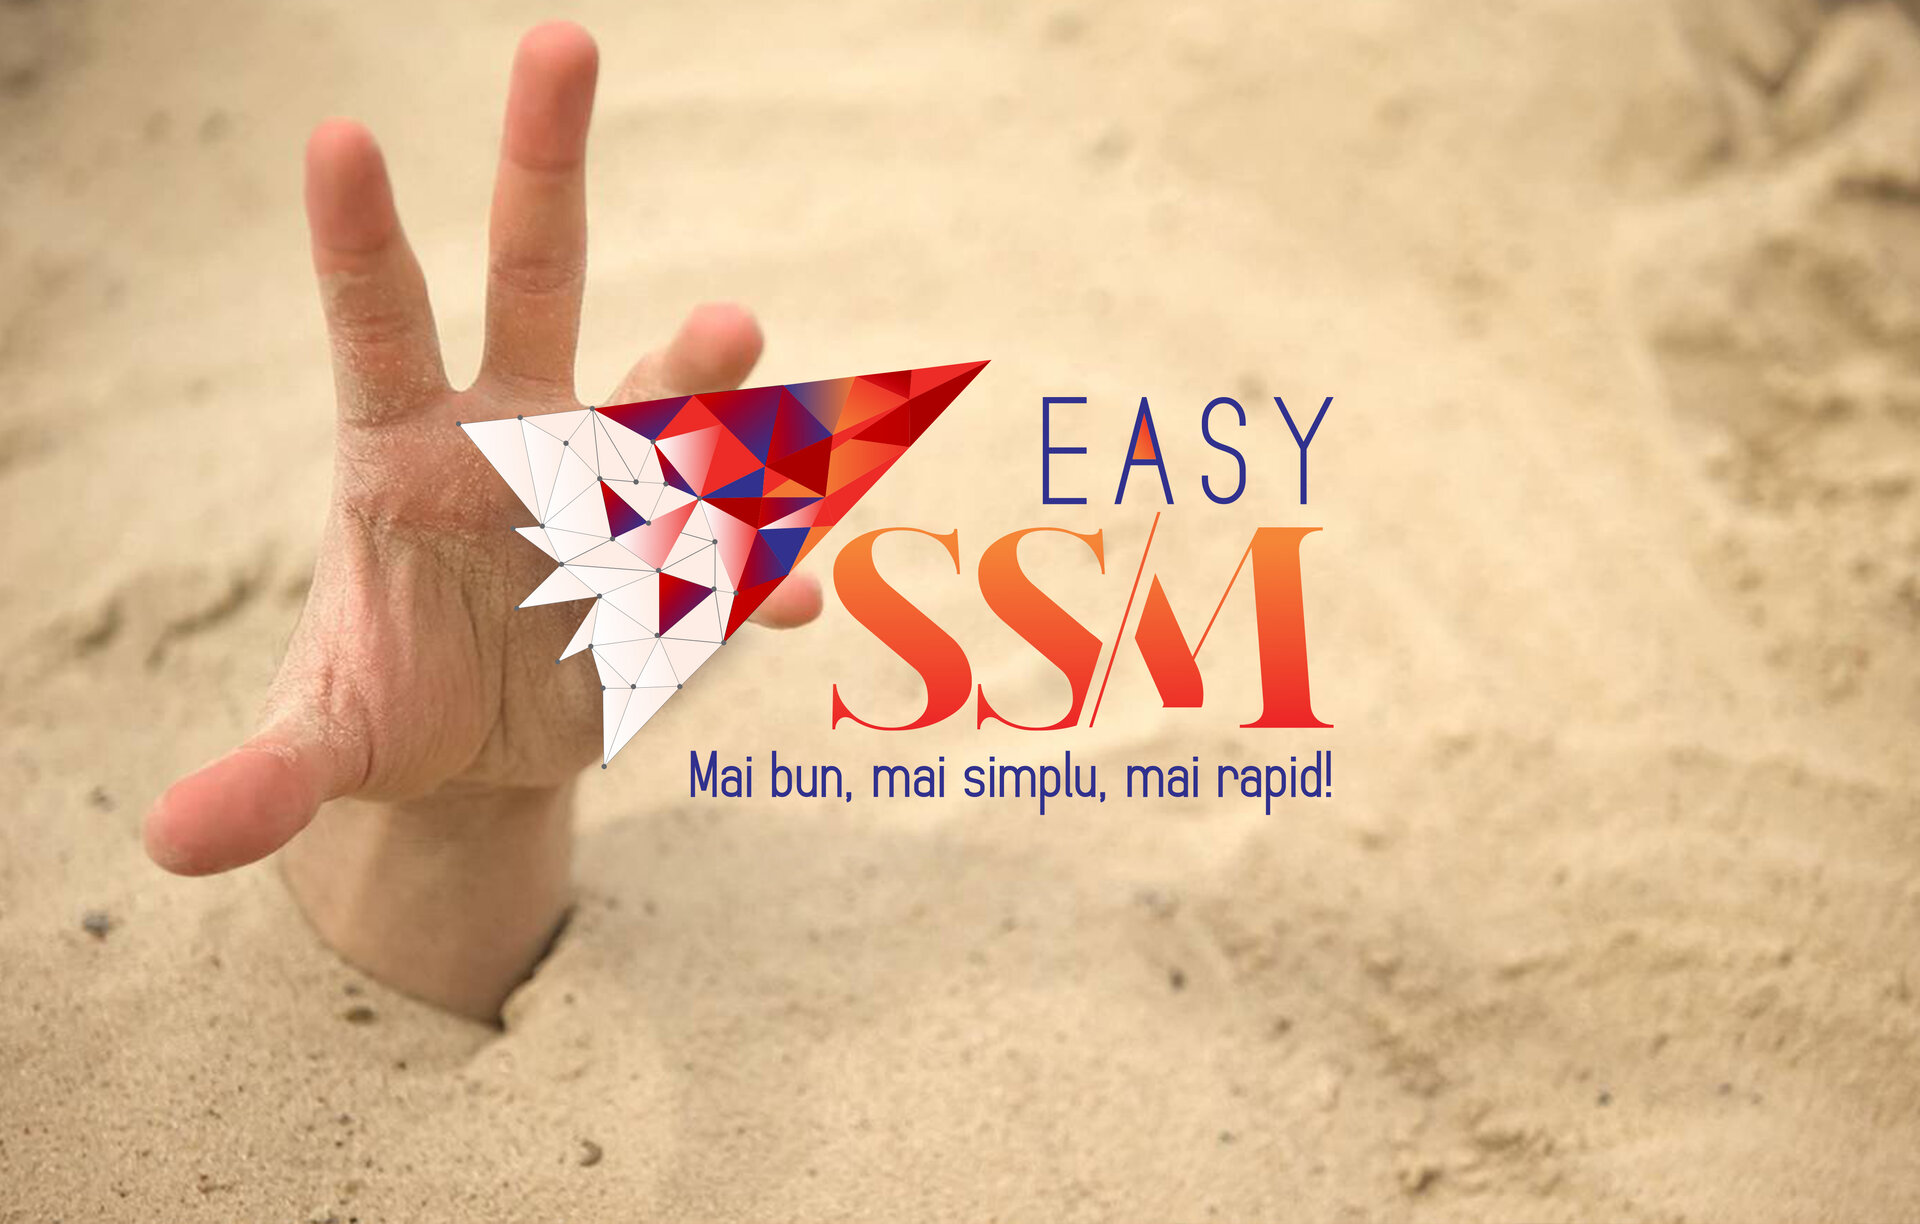  | EasySSM